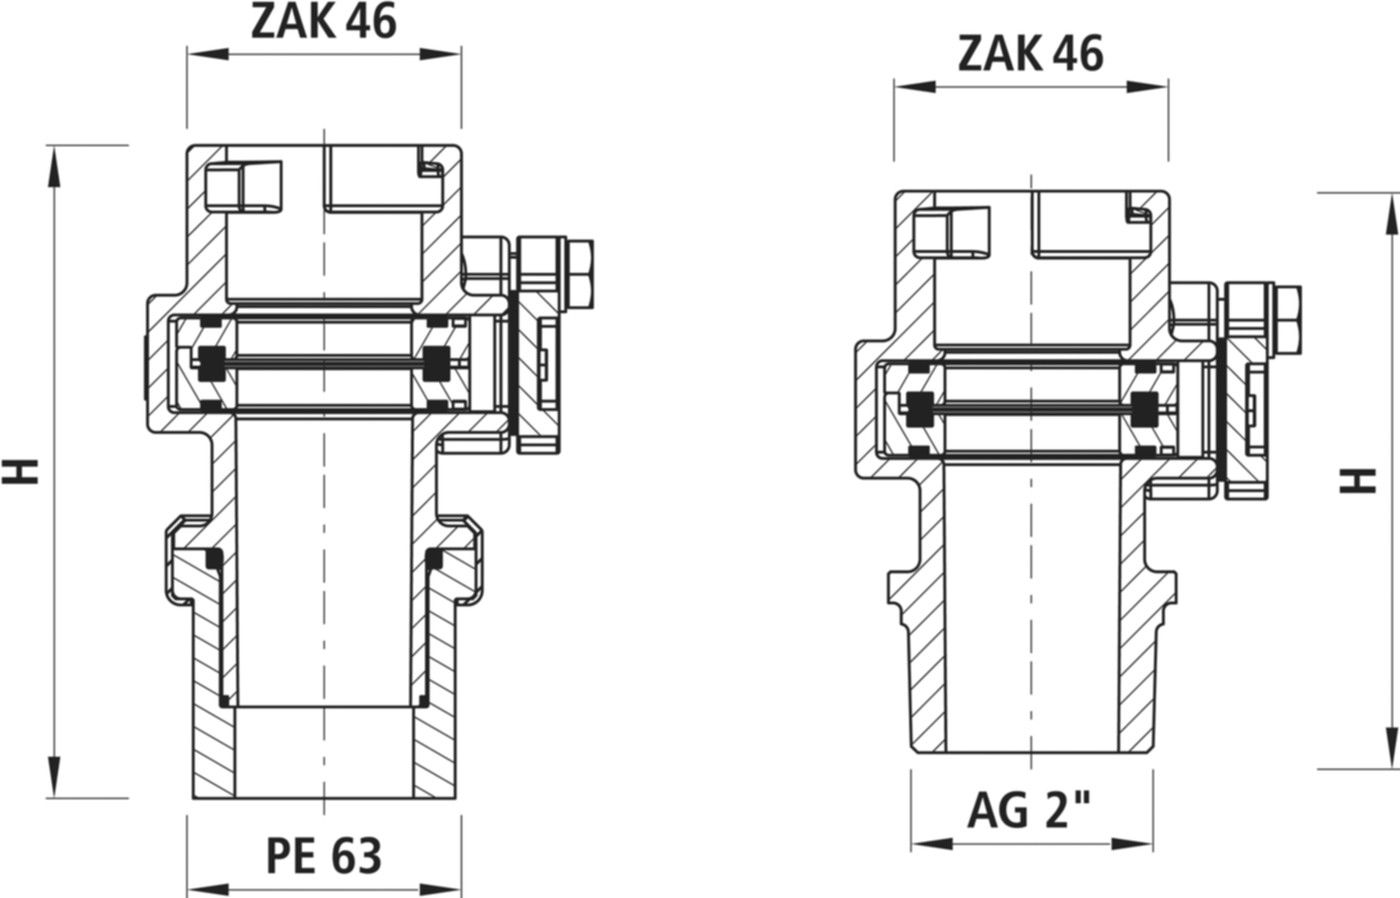 Anbohrsperre Typ 2 AG/ZAK 3721 2" - ZAK - Hawle Hausanschluss- und Anbohrarmaturen